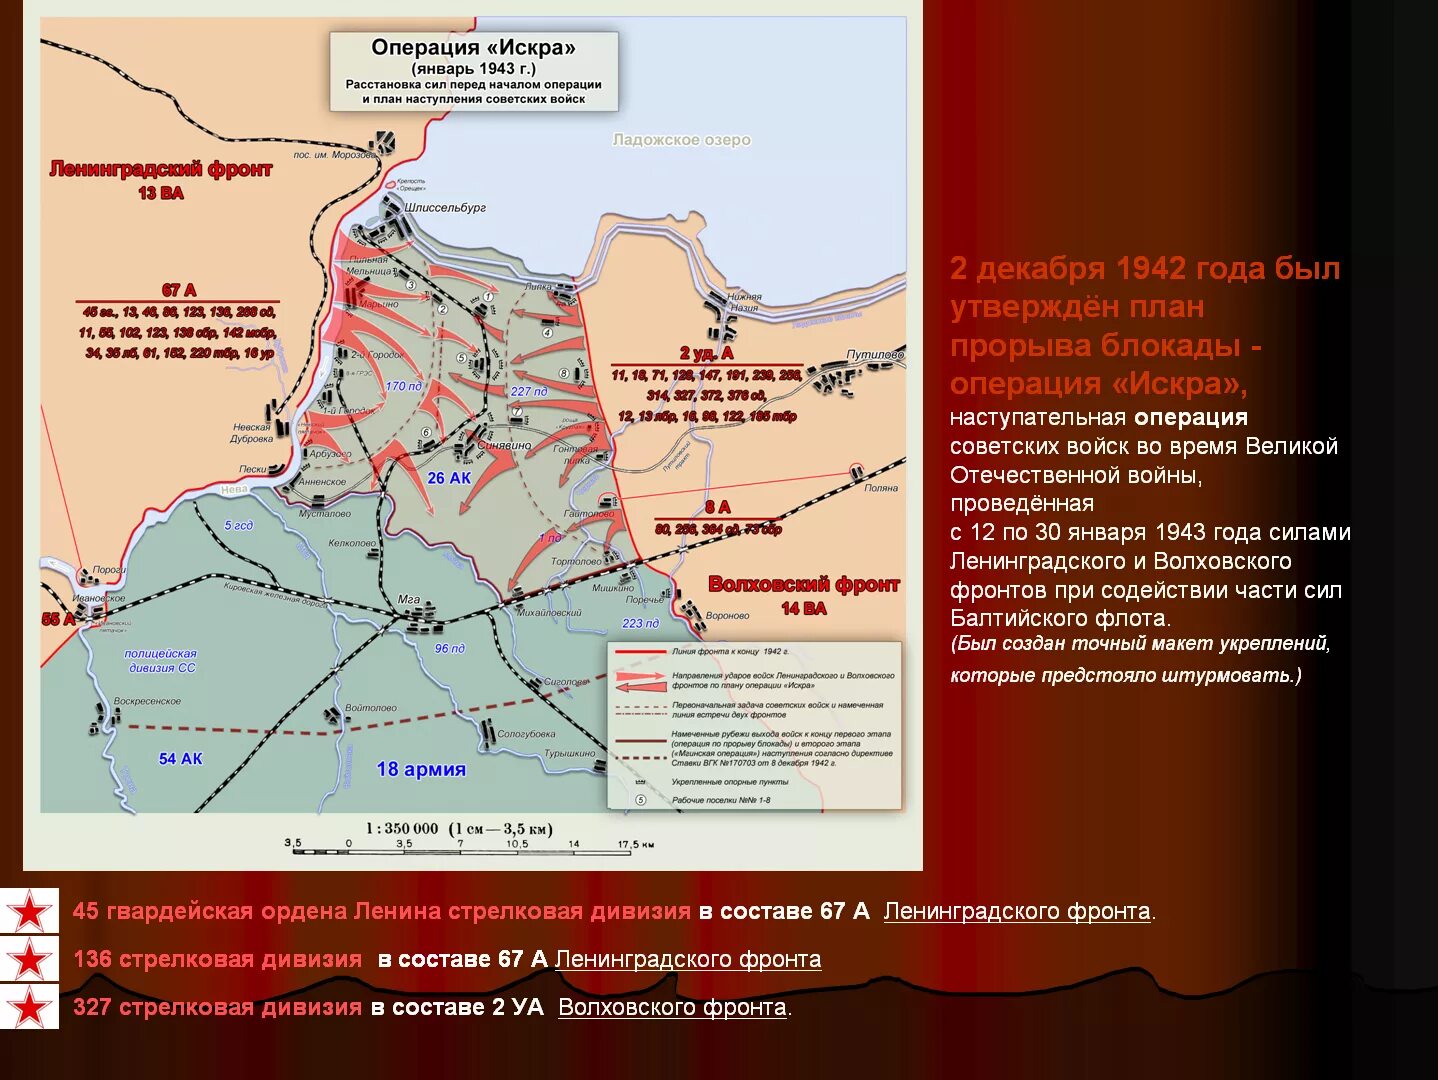 Блокада ленинграда кодовое название операции. Прорыв блокады Ленинграда (12–30 января 1943). Карта прорыва блокады Ленинграда в 1943 году.